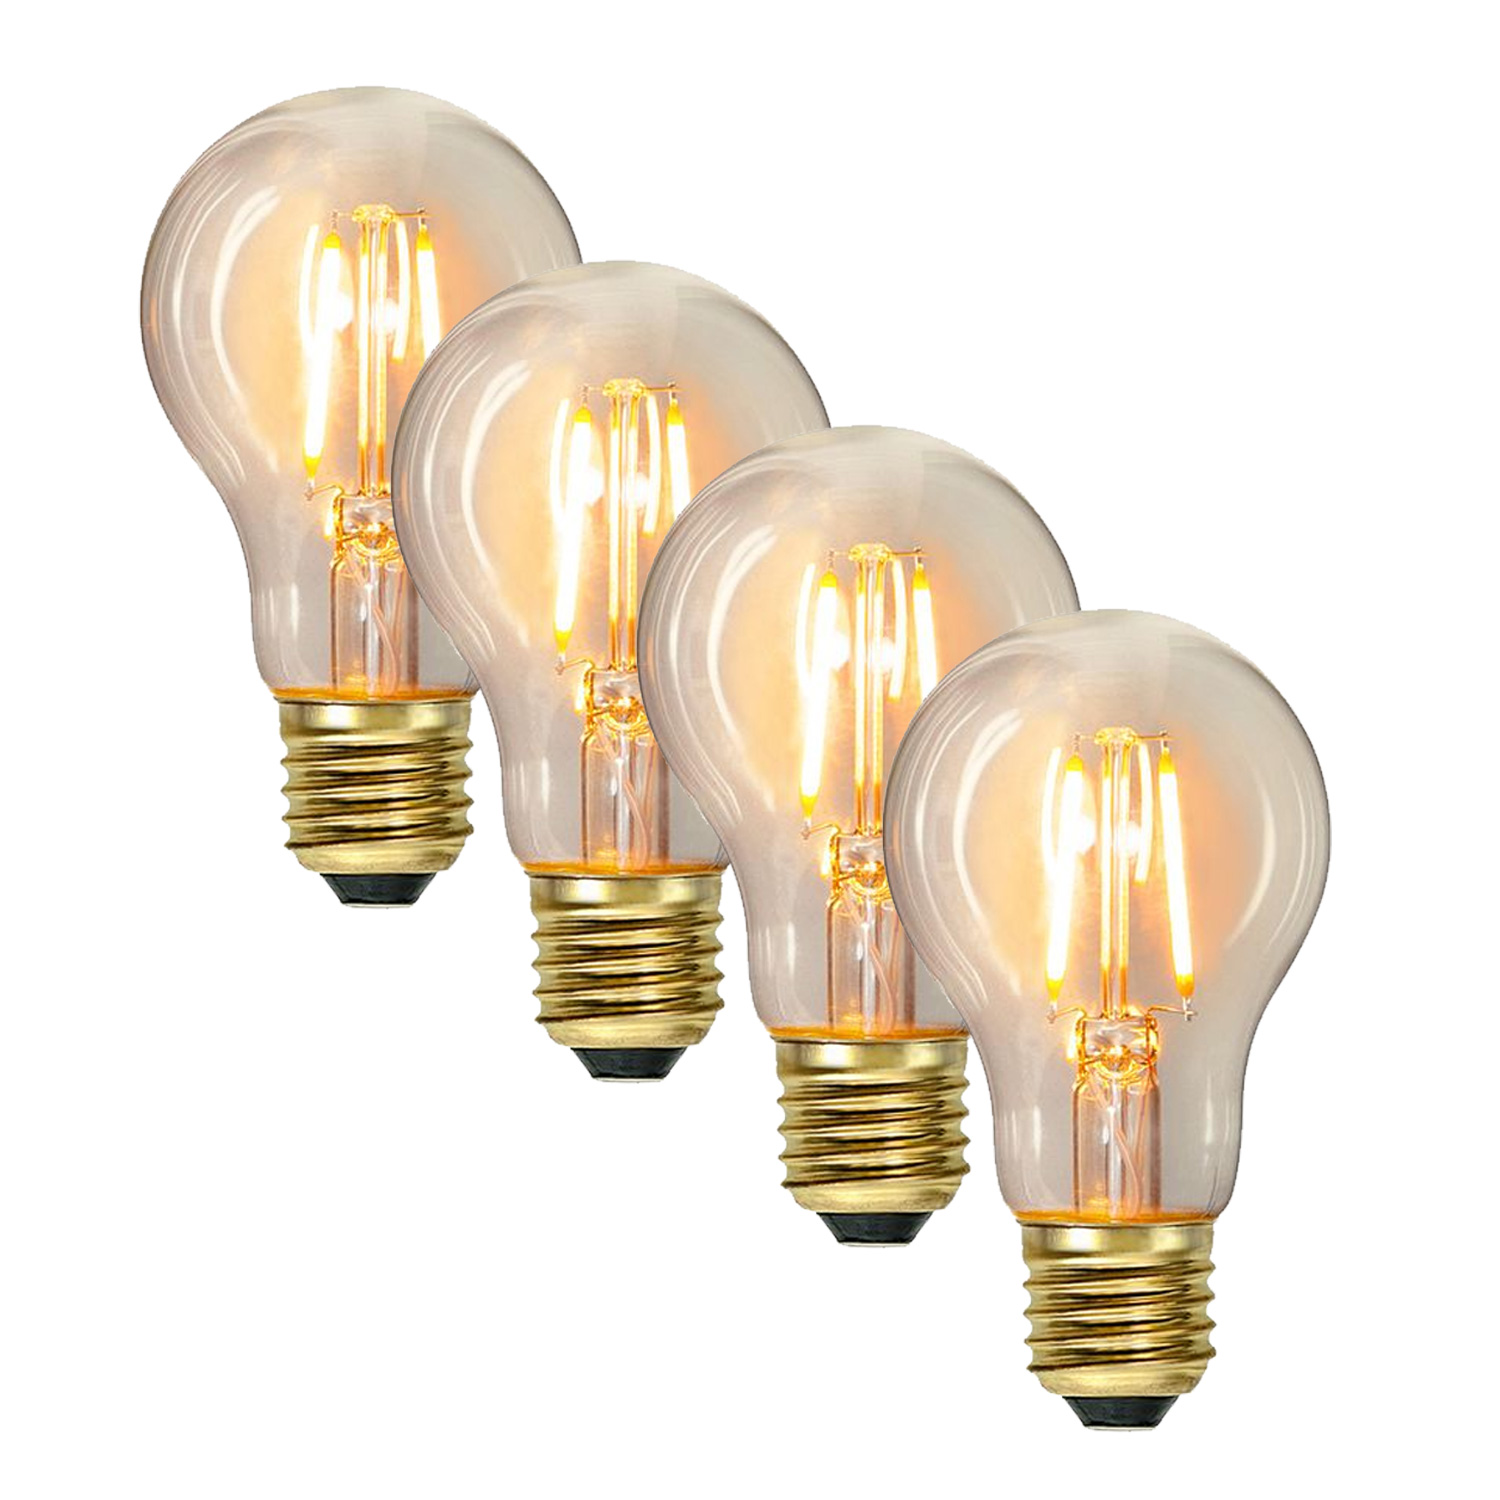 Illu-/Partylichterkette 10m - Außenlichterkette weiß - Made in Germany- 30 Edison LED Filamentlampen